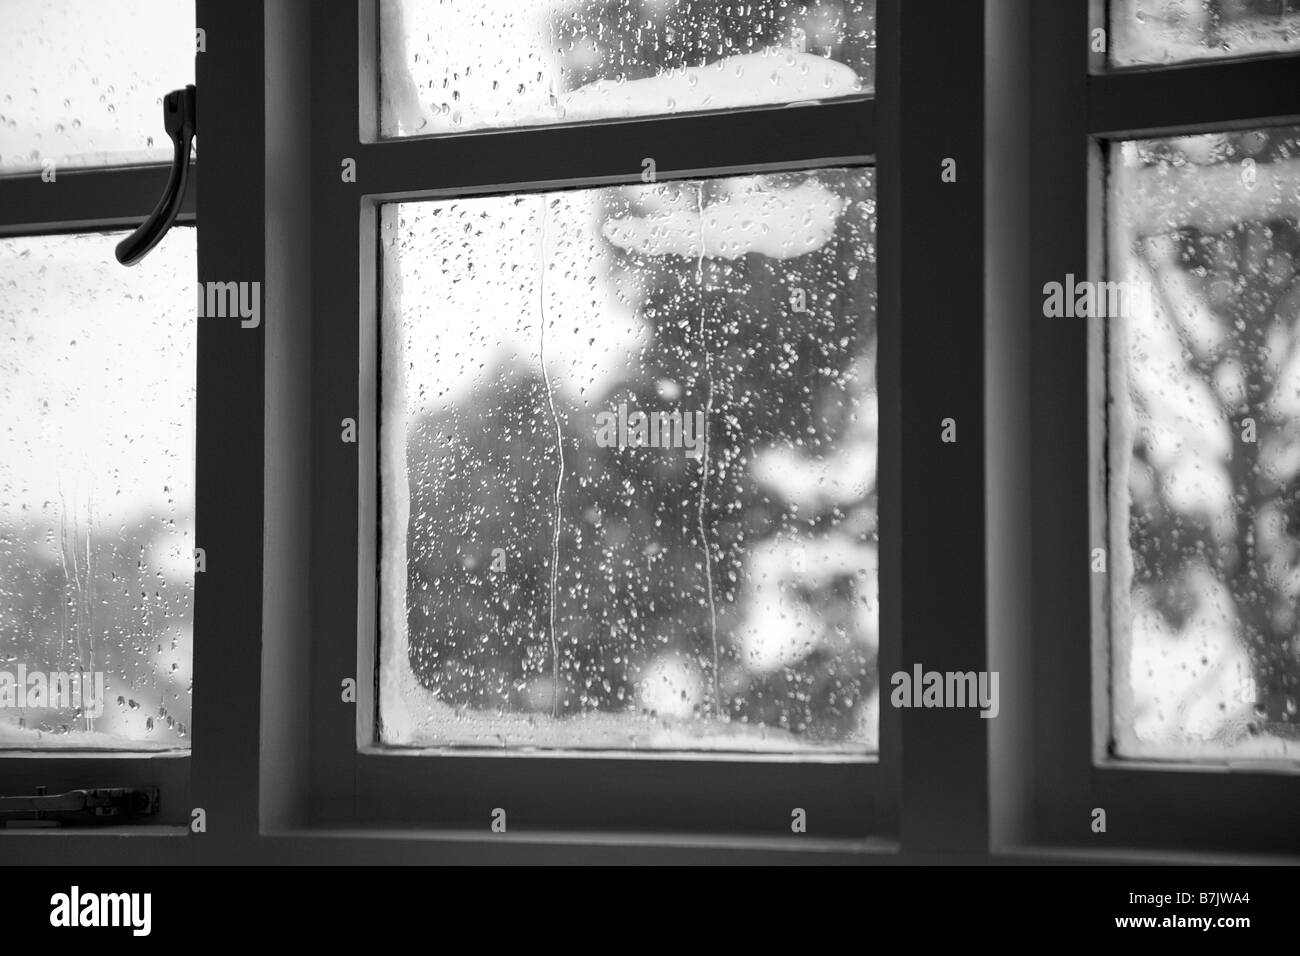 Window condensation Stock Photo